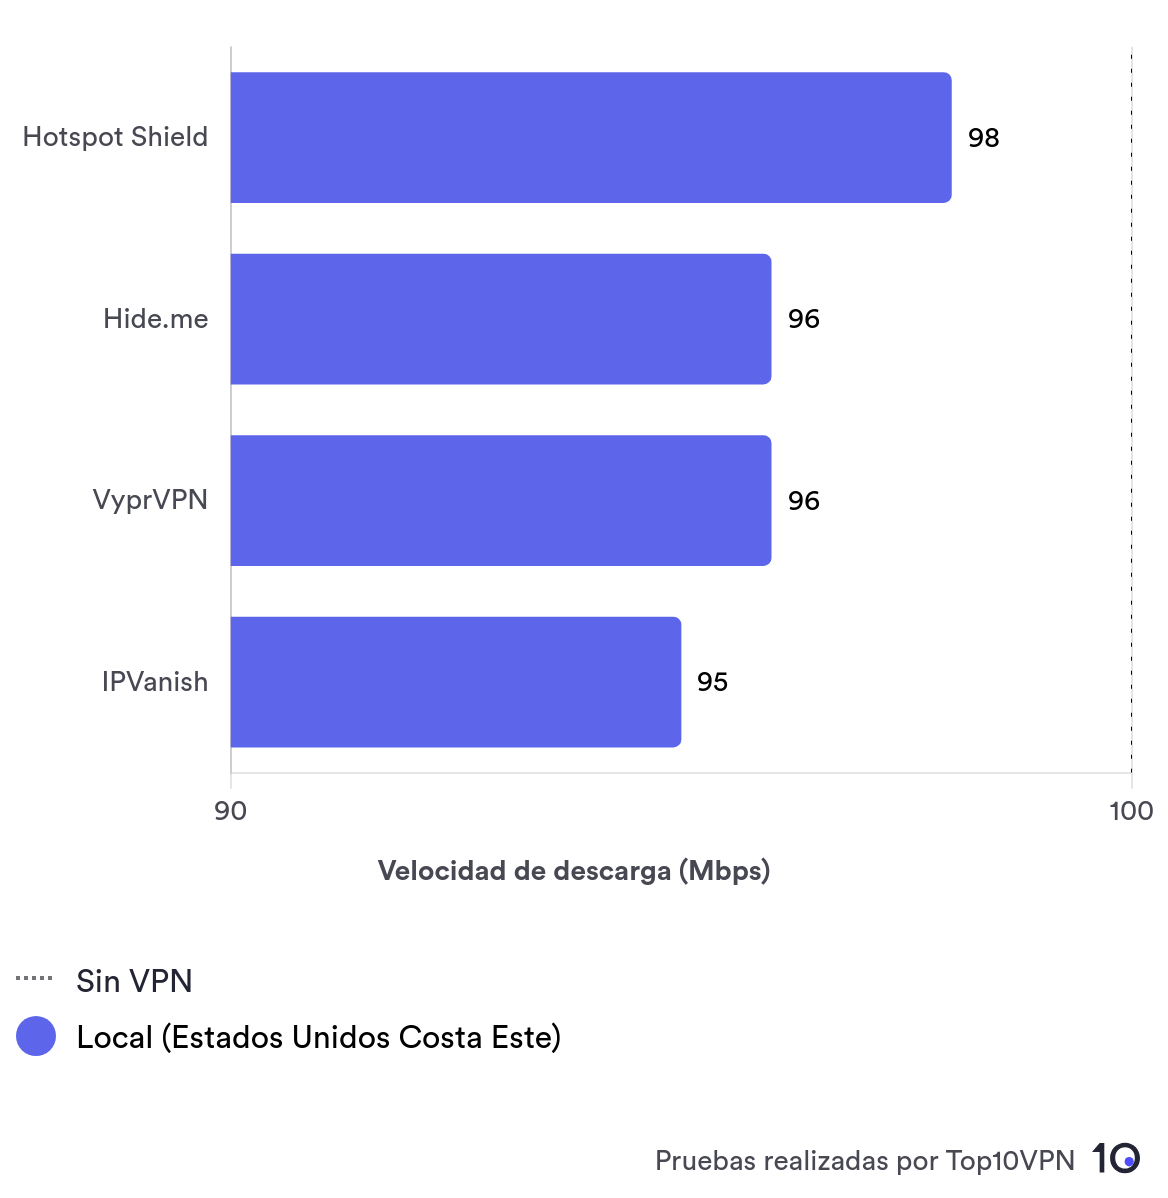 Gráfico de comparación de las velocidades locales entre Hotspot Shield, Hide.me, VyprVPN y IPVanish.